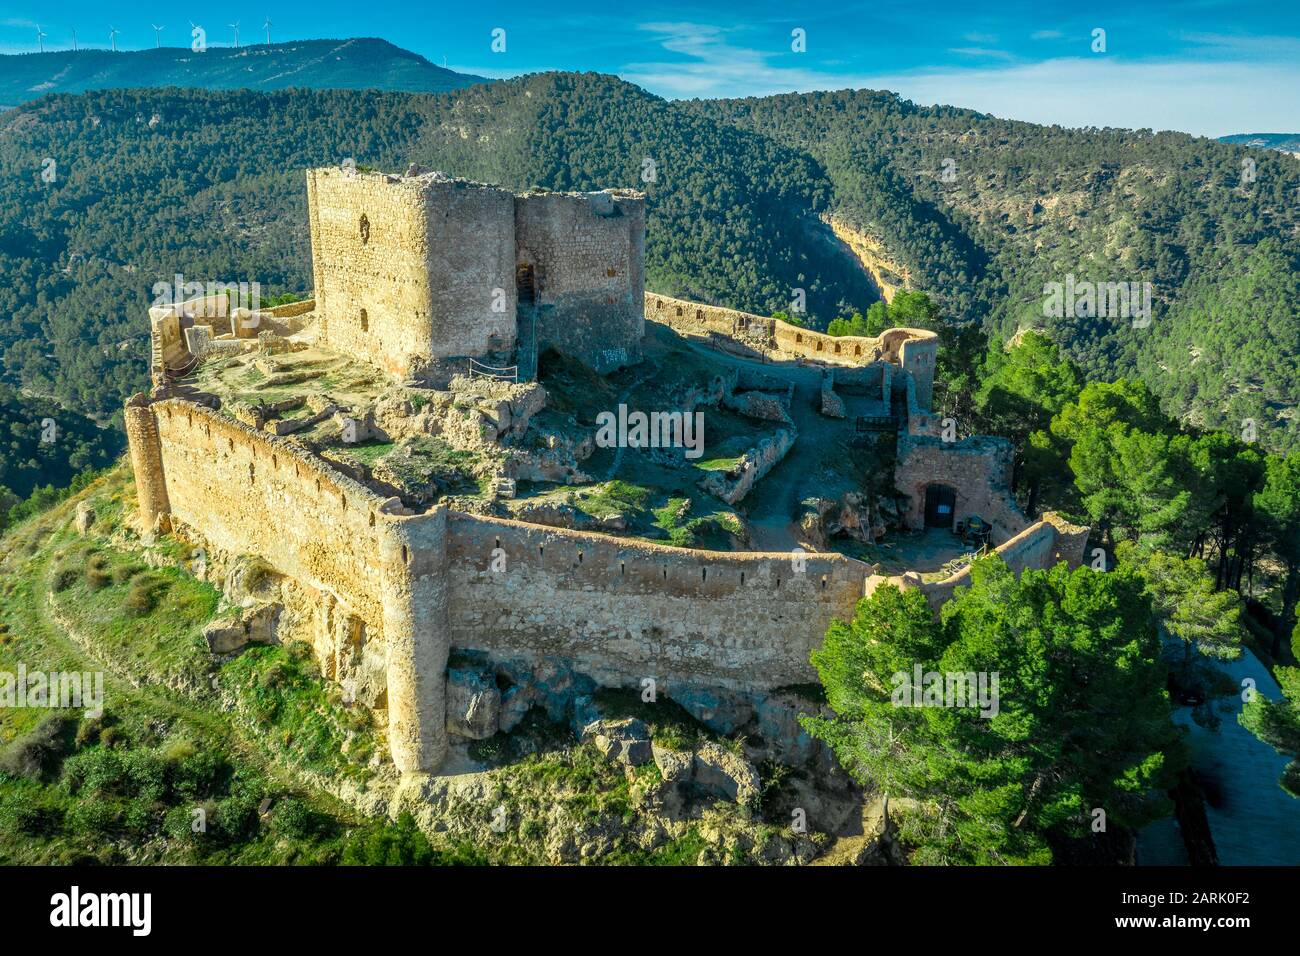 Veduta aerea del castello di Jalance in Spagna su una collina del 12th secolo costituito da cortile interno del castello, forma irregolare parete esterna con torre rotonda Foto Stock